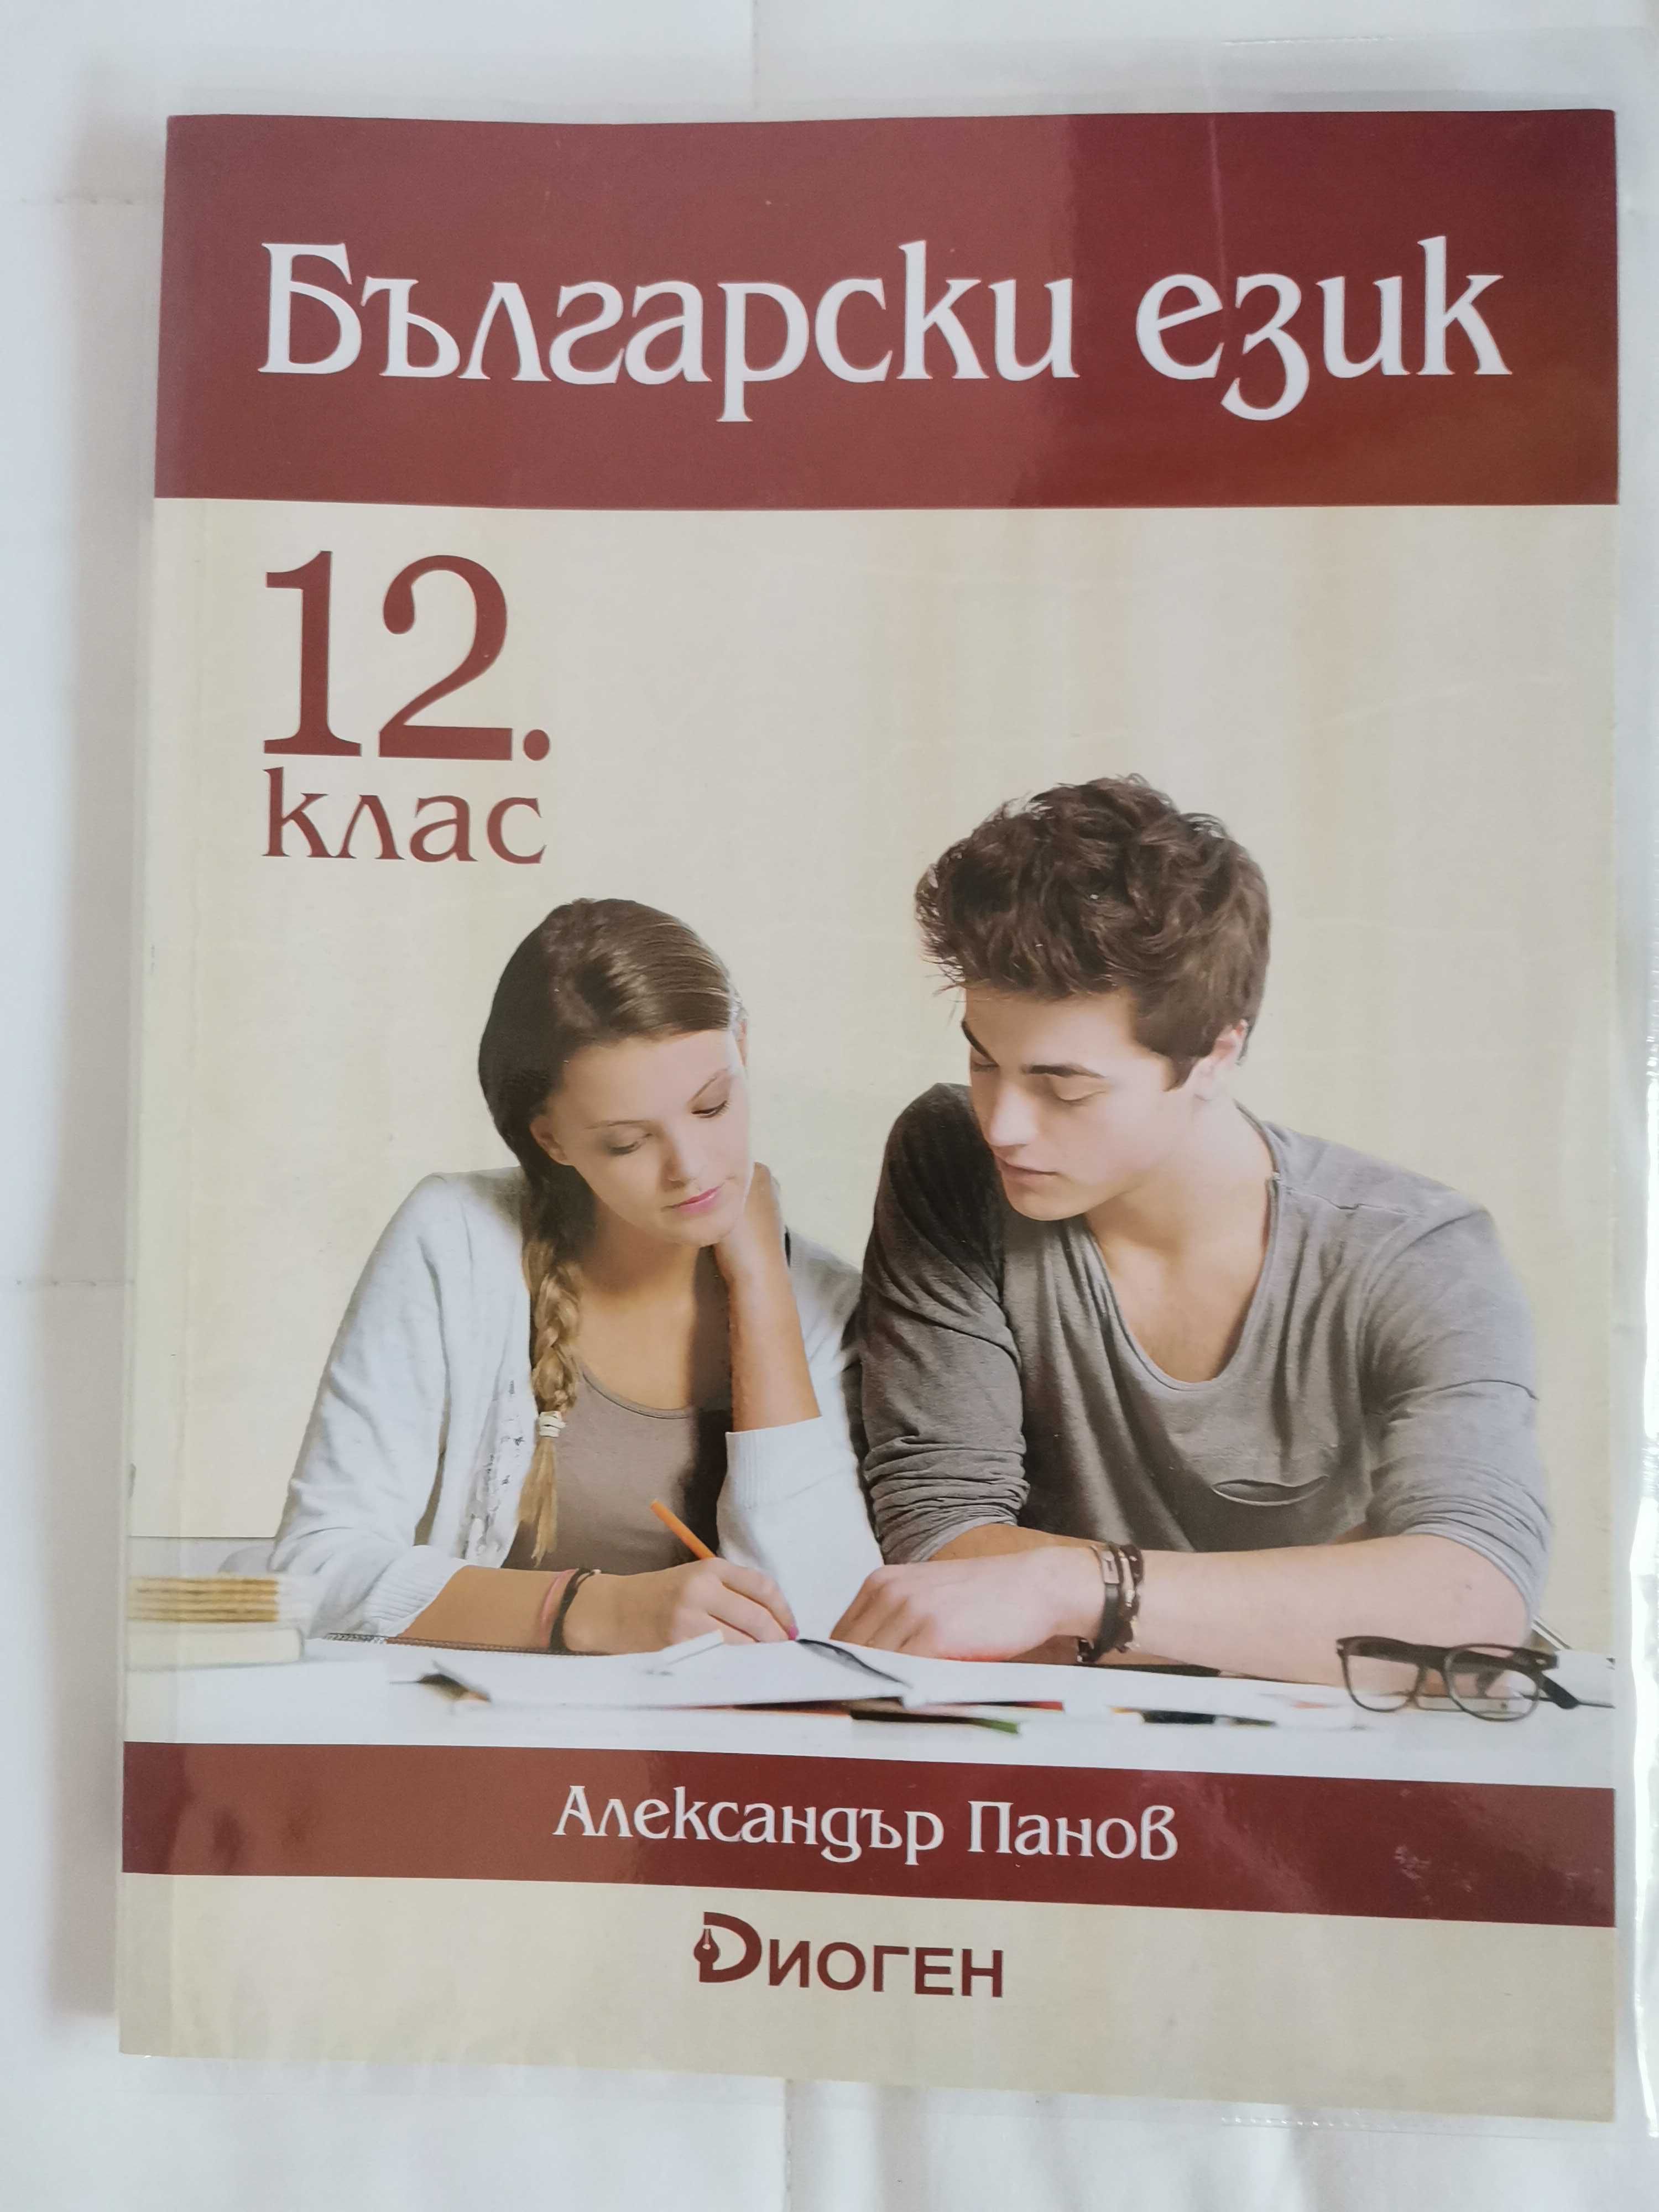 Учебници 12 клас - Първа Ангийска гимназия